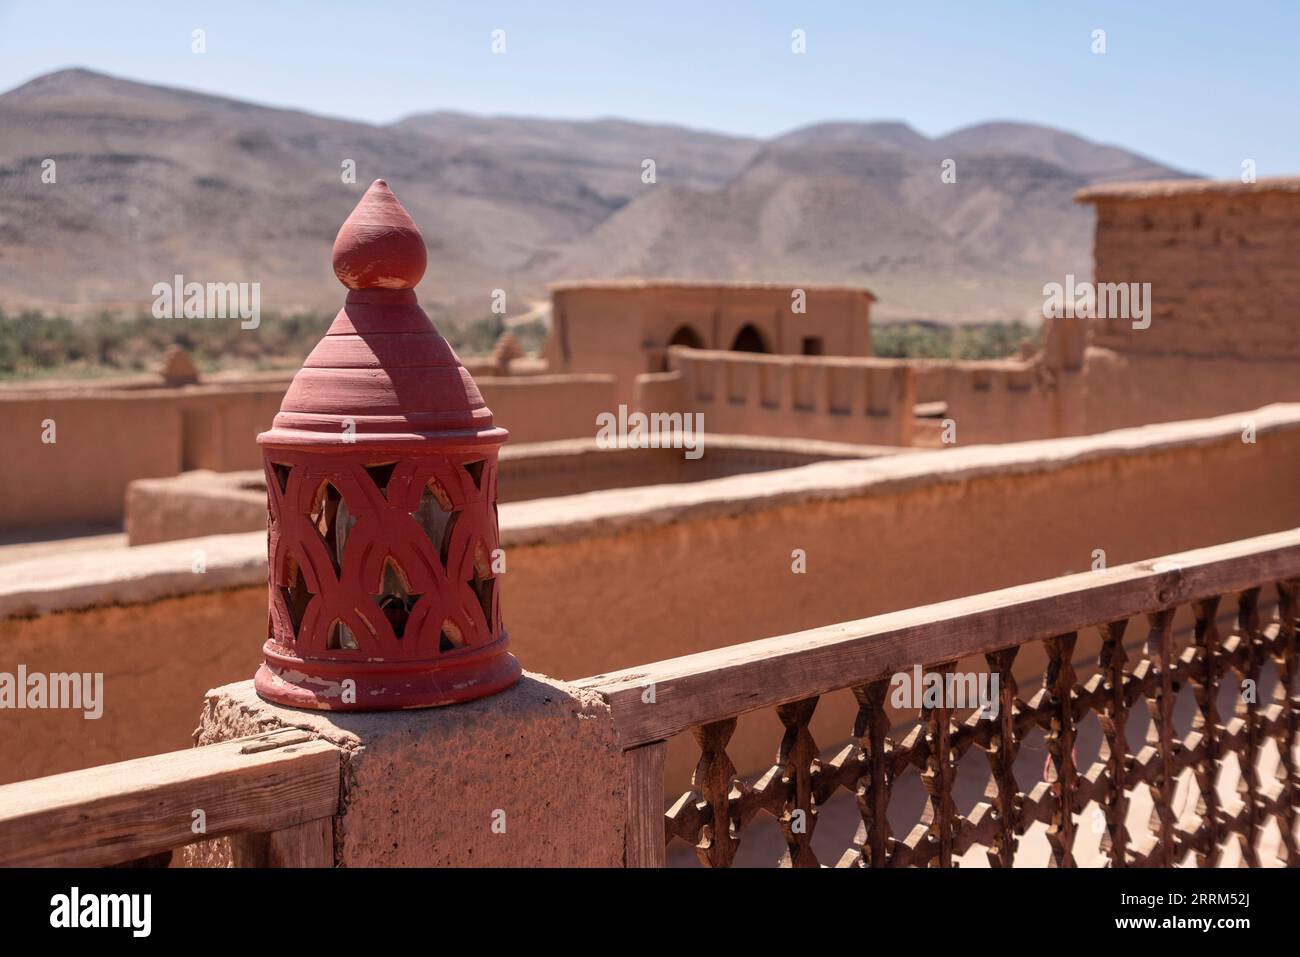 Une lanterne rouge montée sur le toit d'une maison berbère dans la vallée du Draa, au Maroc Banque D'Images